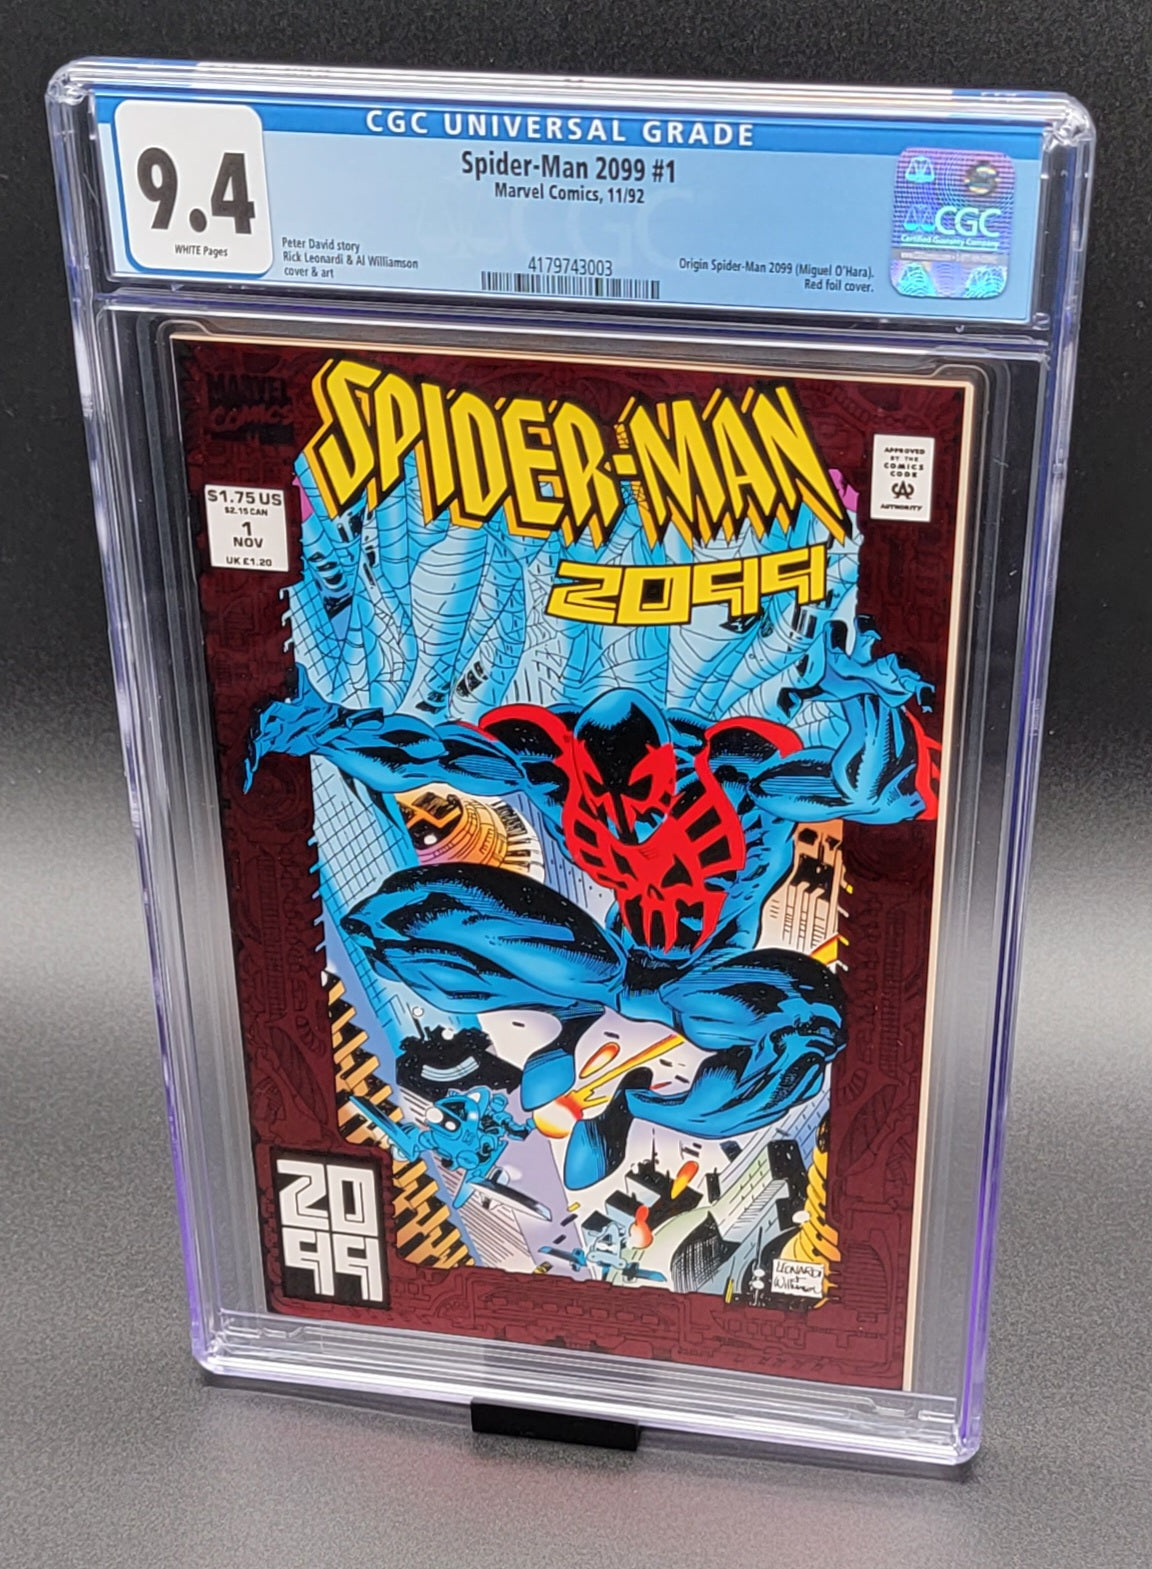 Spider-Man 2099 #1 CGC 9.4